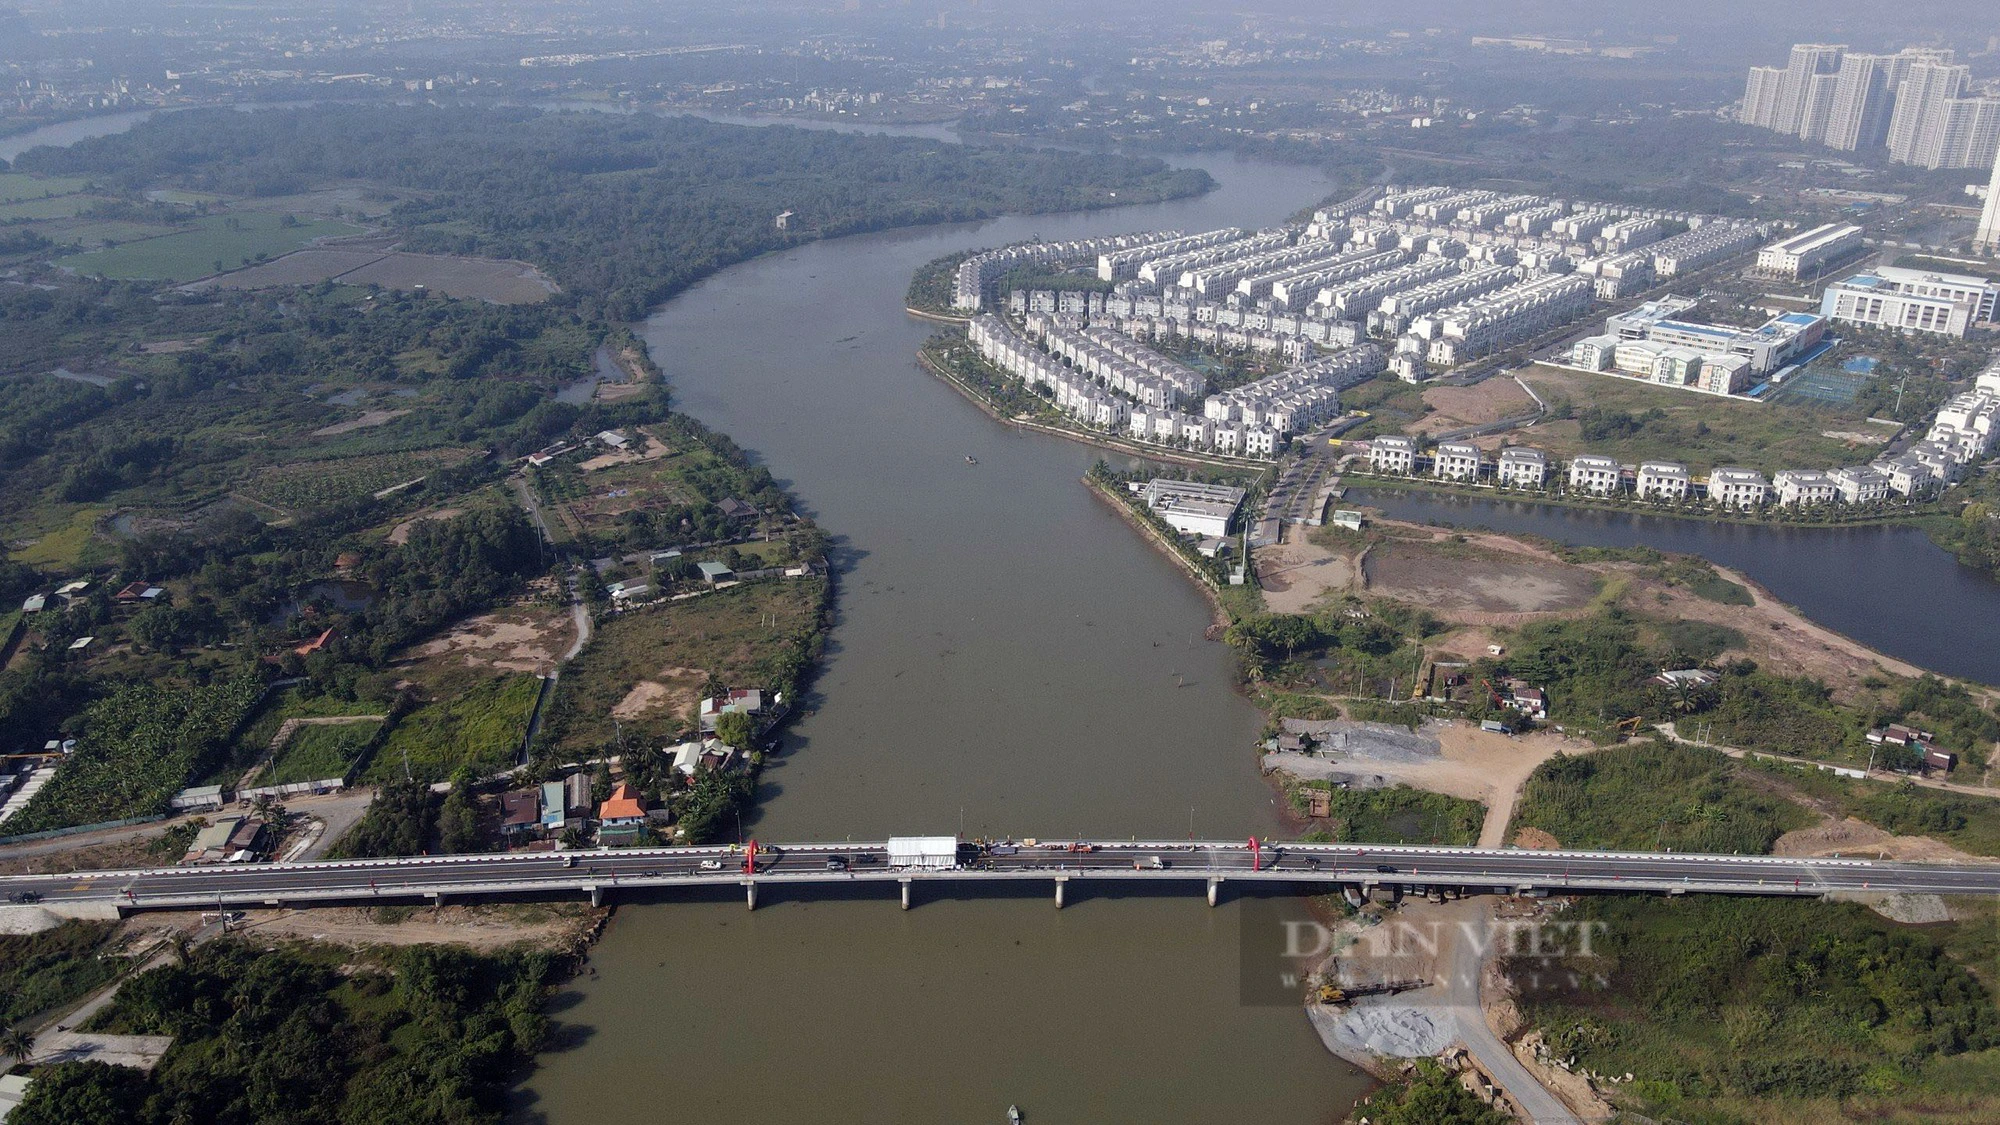 Cầu Long Đại thông xe góp phần tạo động lực phát triển cửa ngõ phía Đông TP.Thủ Đức - Ảnh 2.